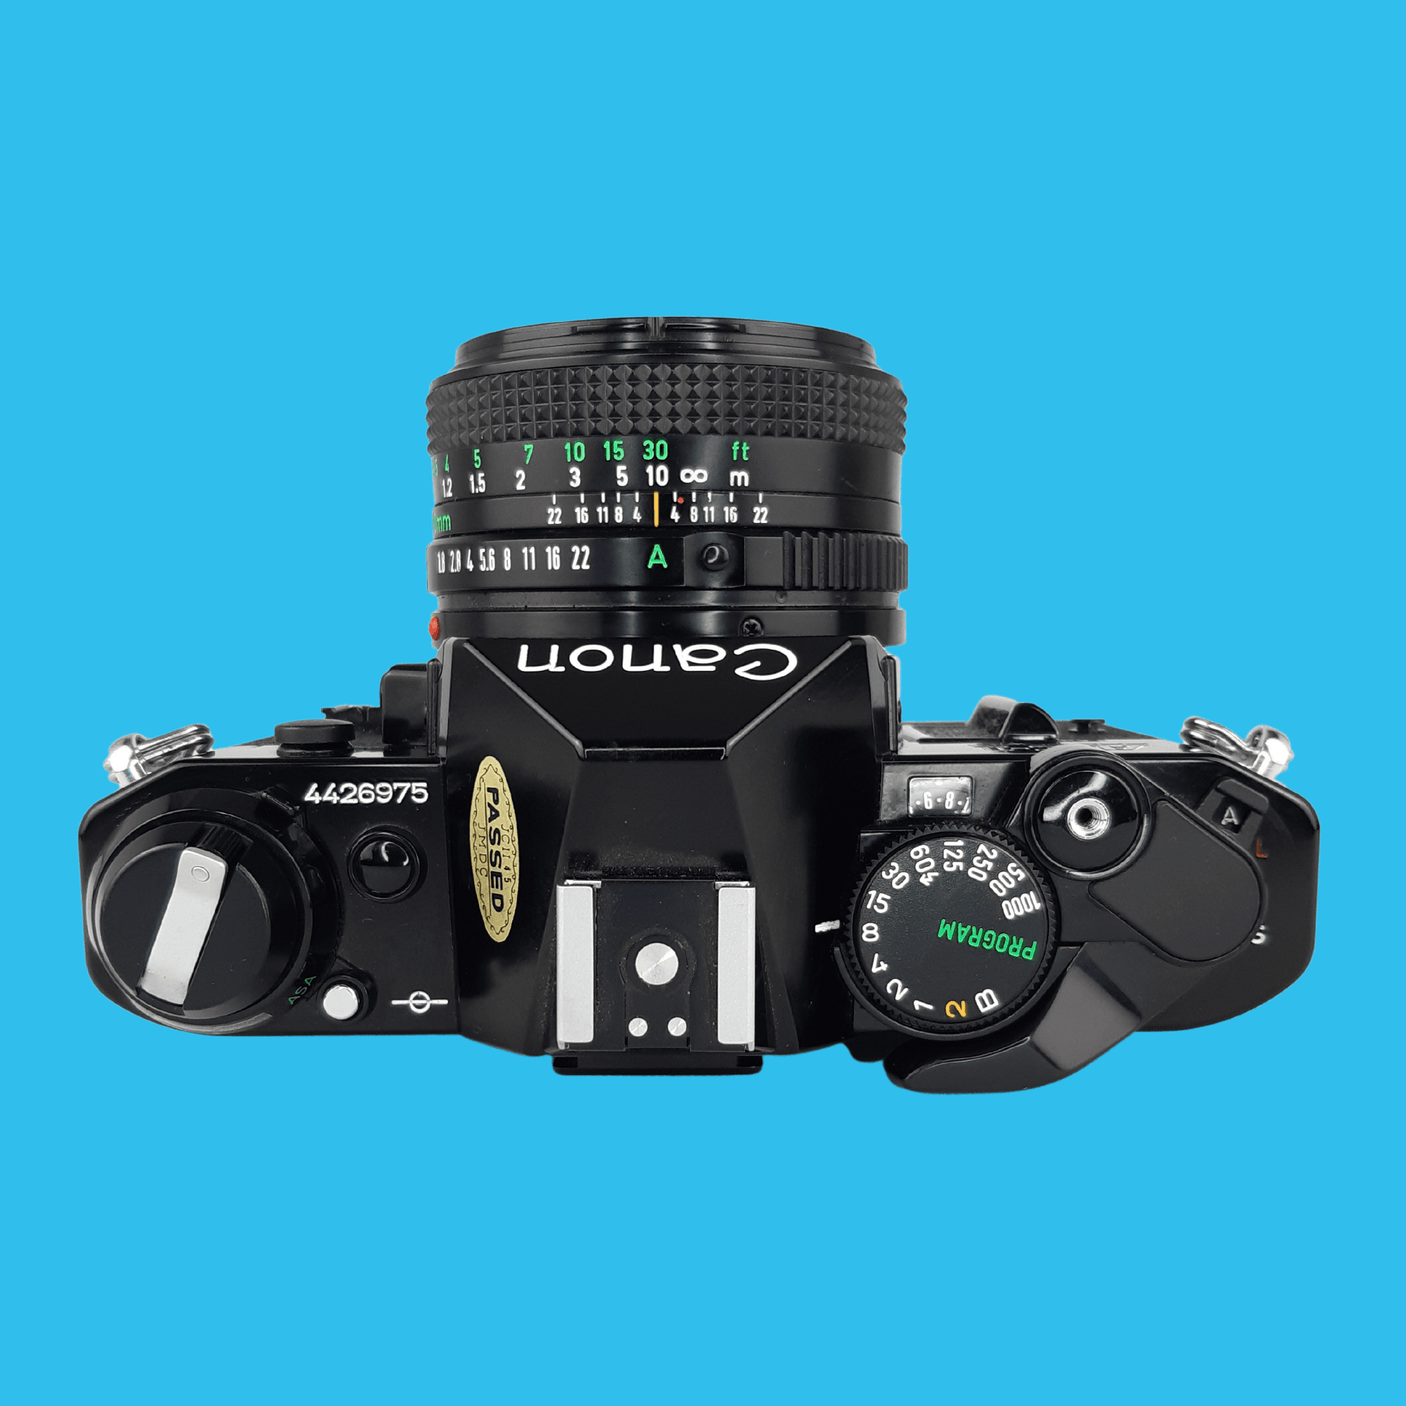 Canon AE-1 プログラム ブラック 35mm 一眼レフ フィルム カメラ キャノン プライム レンズ付き